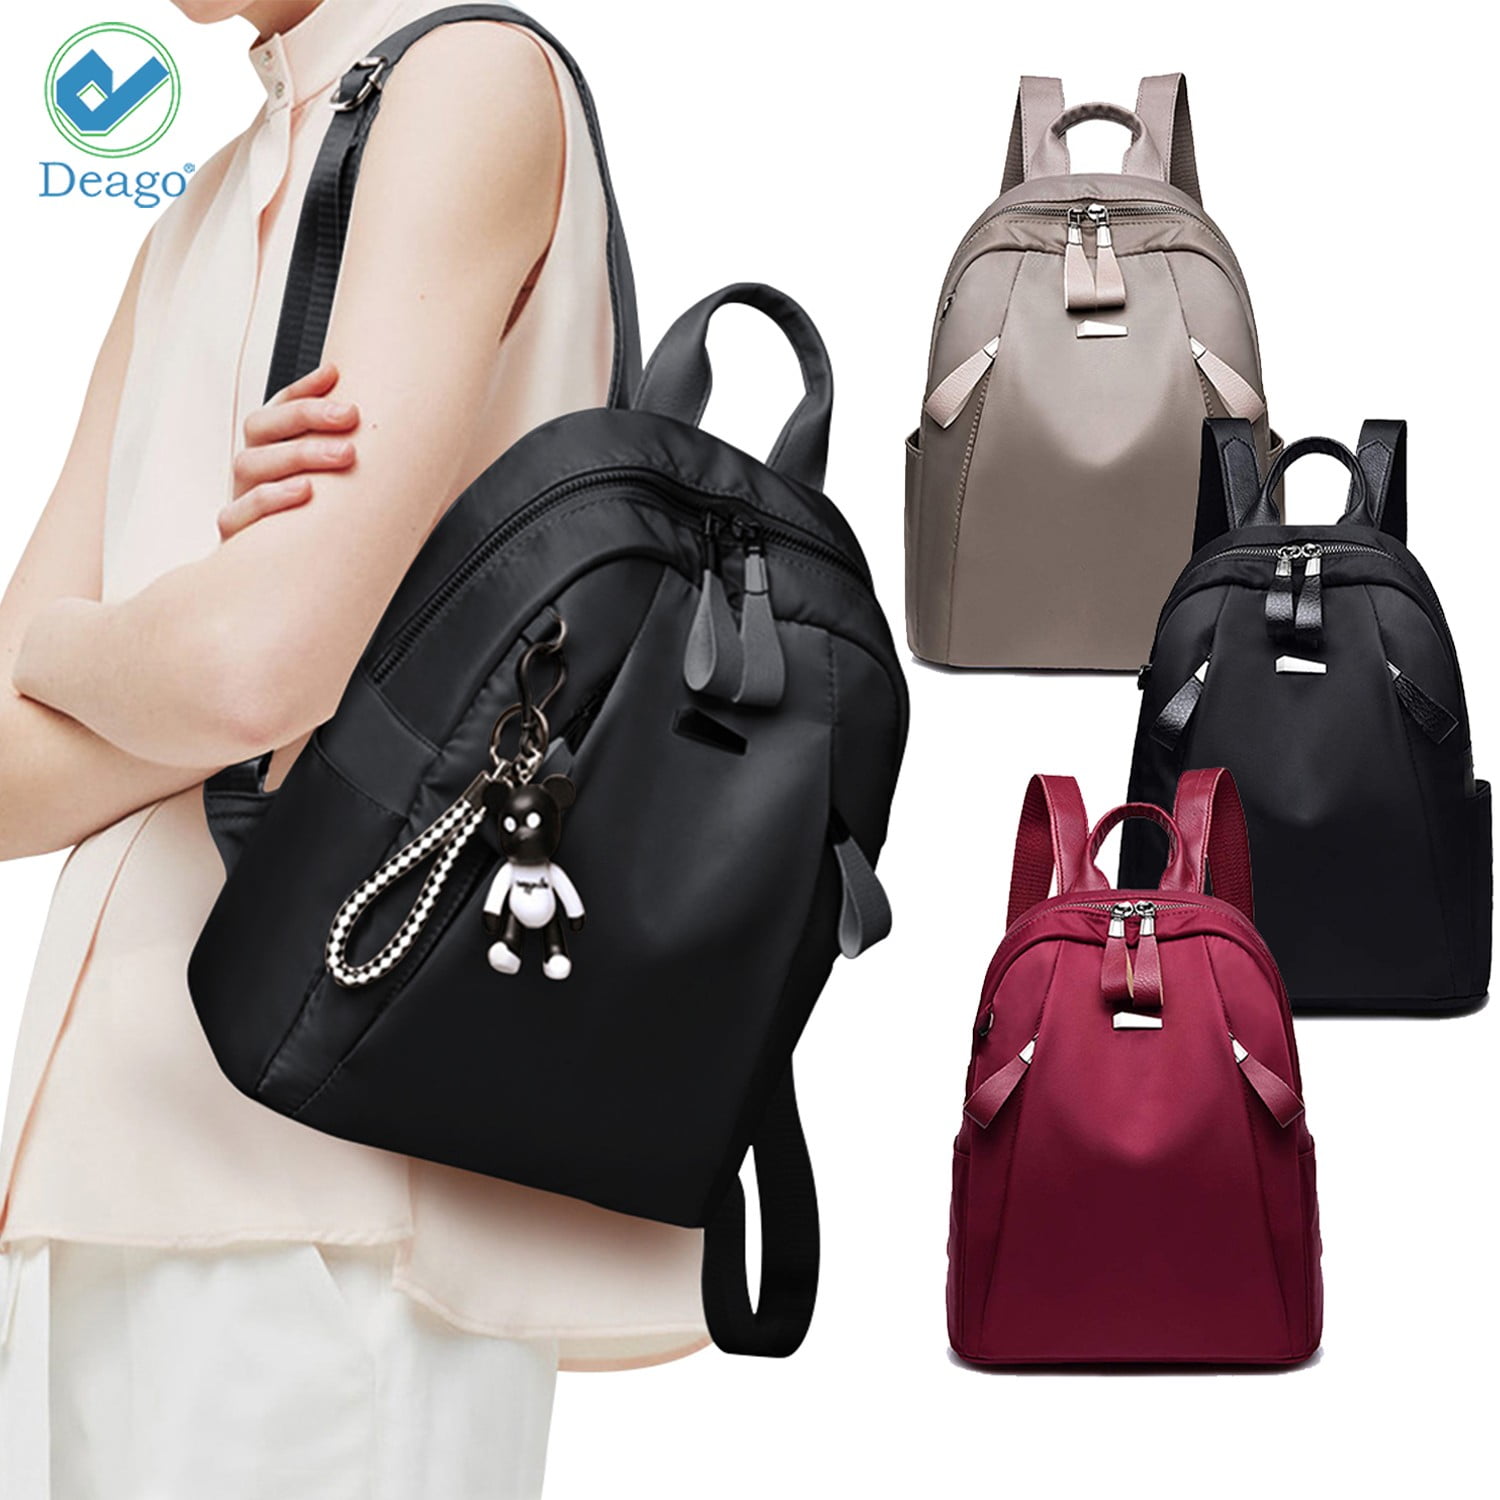 DGCLJY Backpack Waterproof Leather Multifunctional Backpack Messenger Bag Backpack Sports Travel Tote Bag Handbag Shoulder Bag 